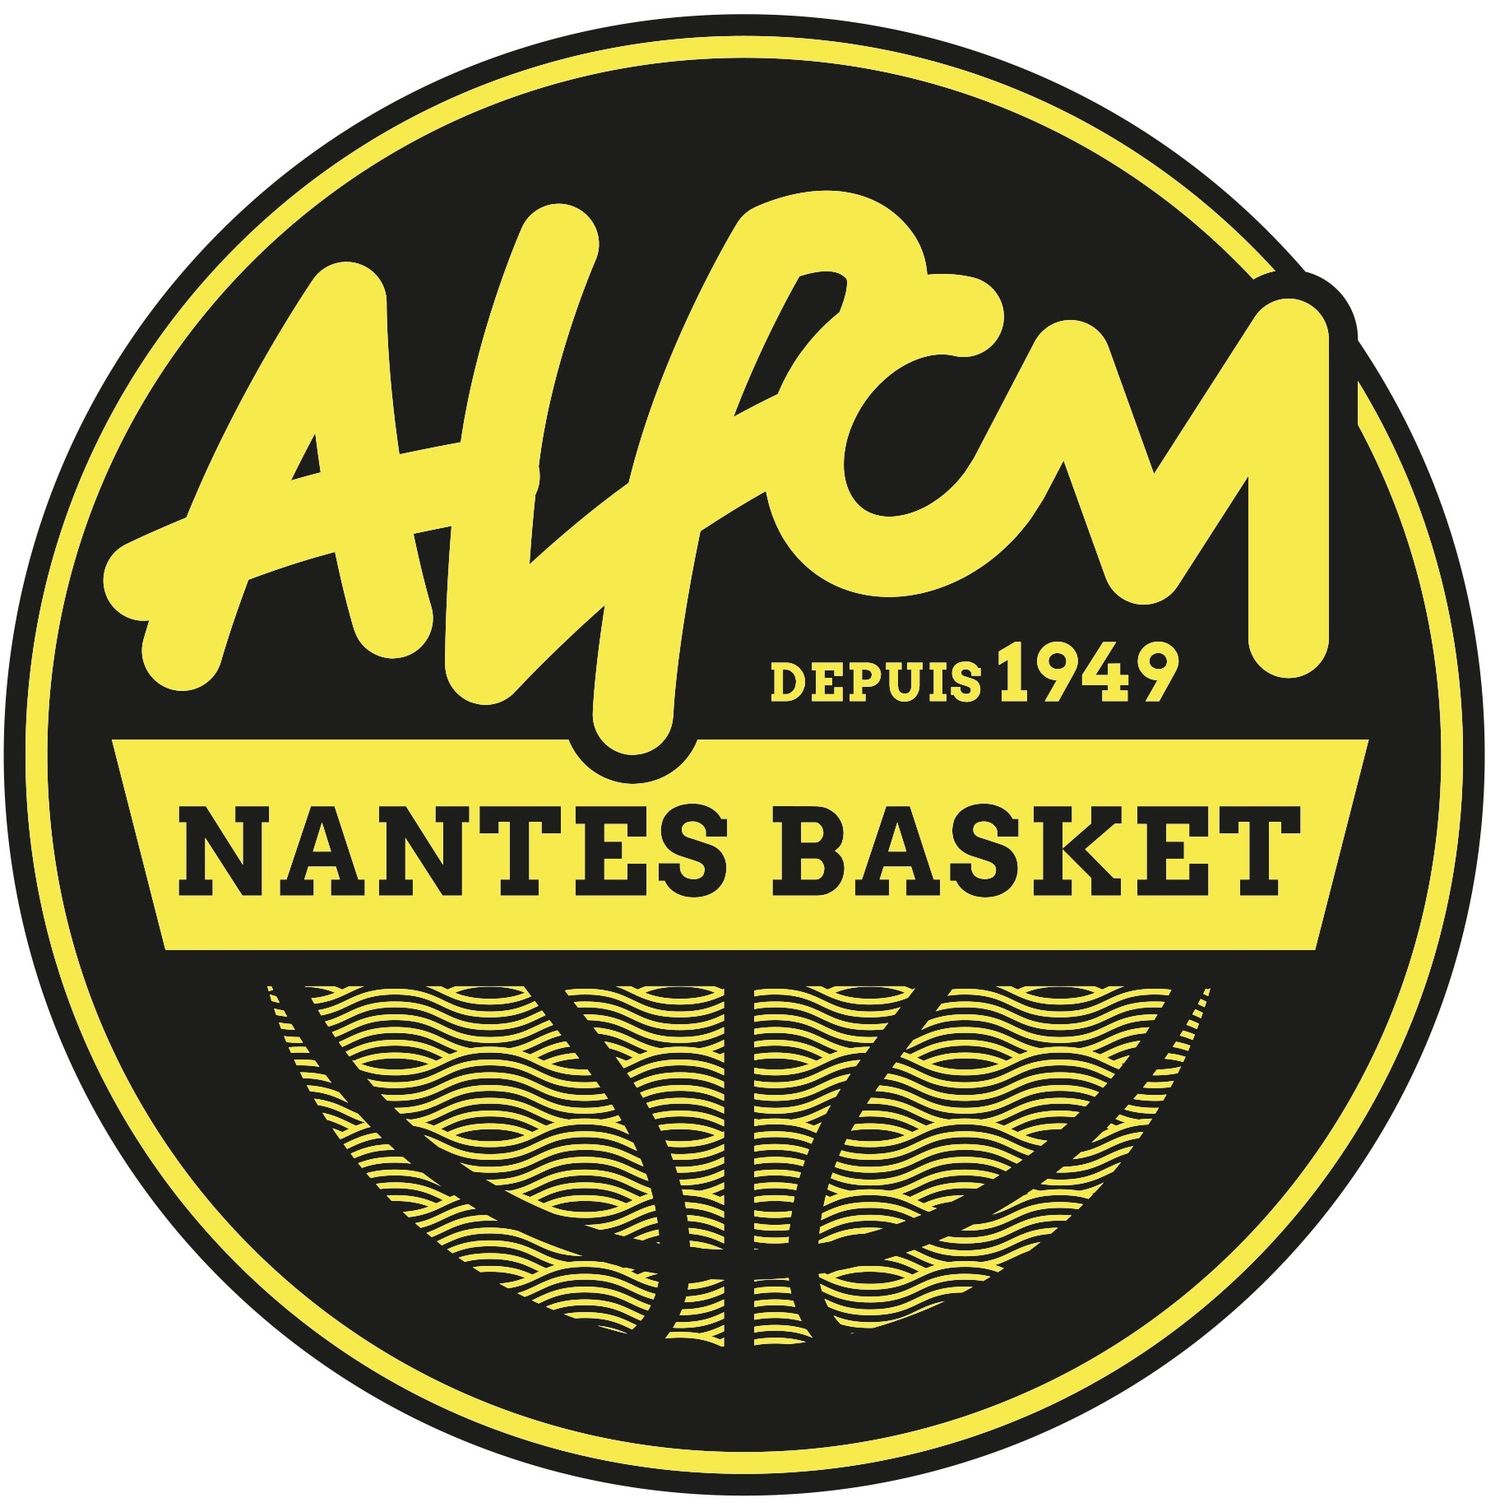 ALPCM Nantes Basket